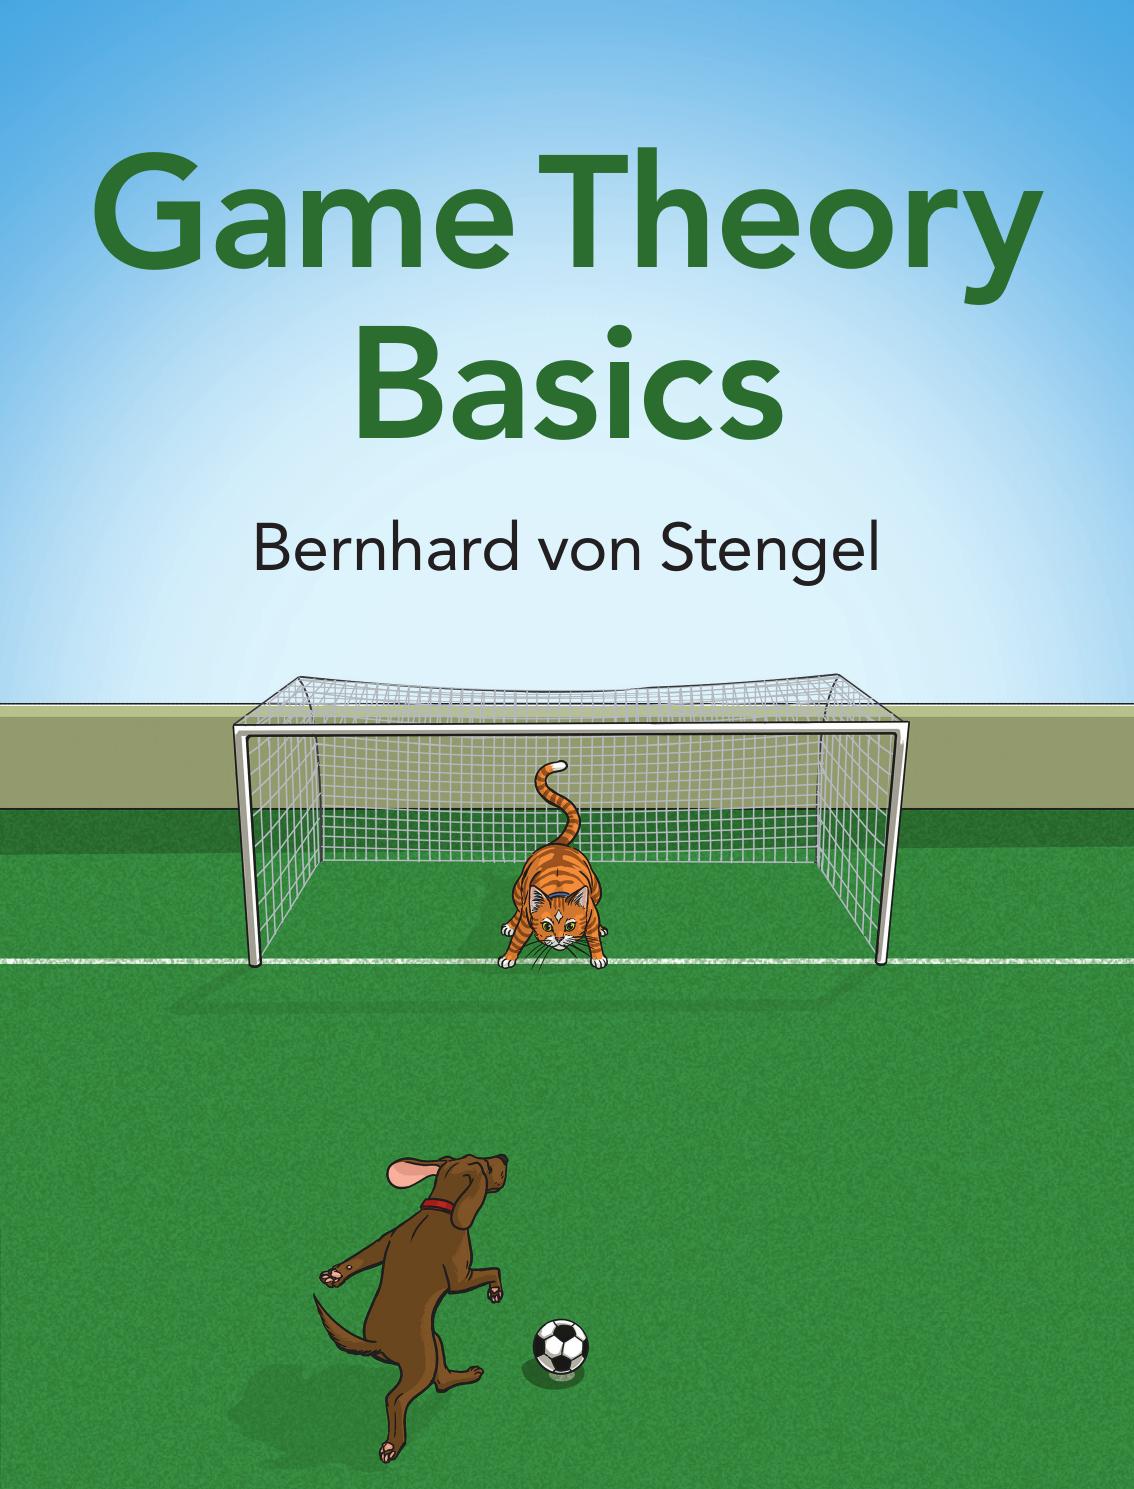 Game Theory Basics by Bernhard von Stengel